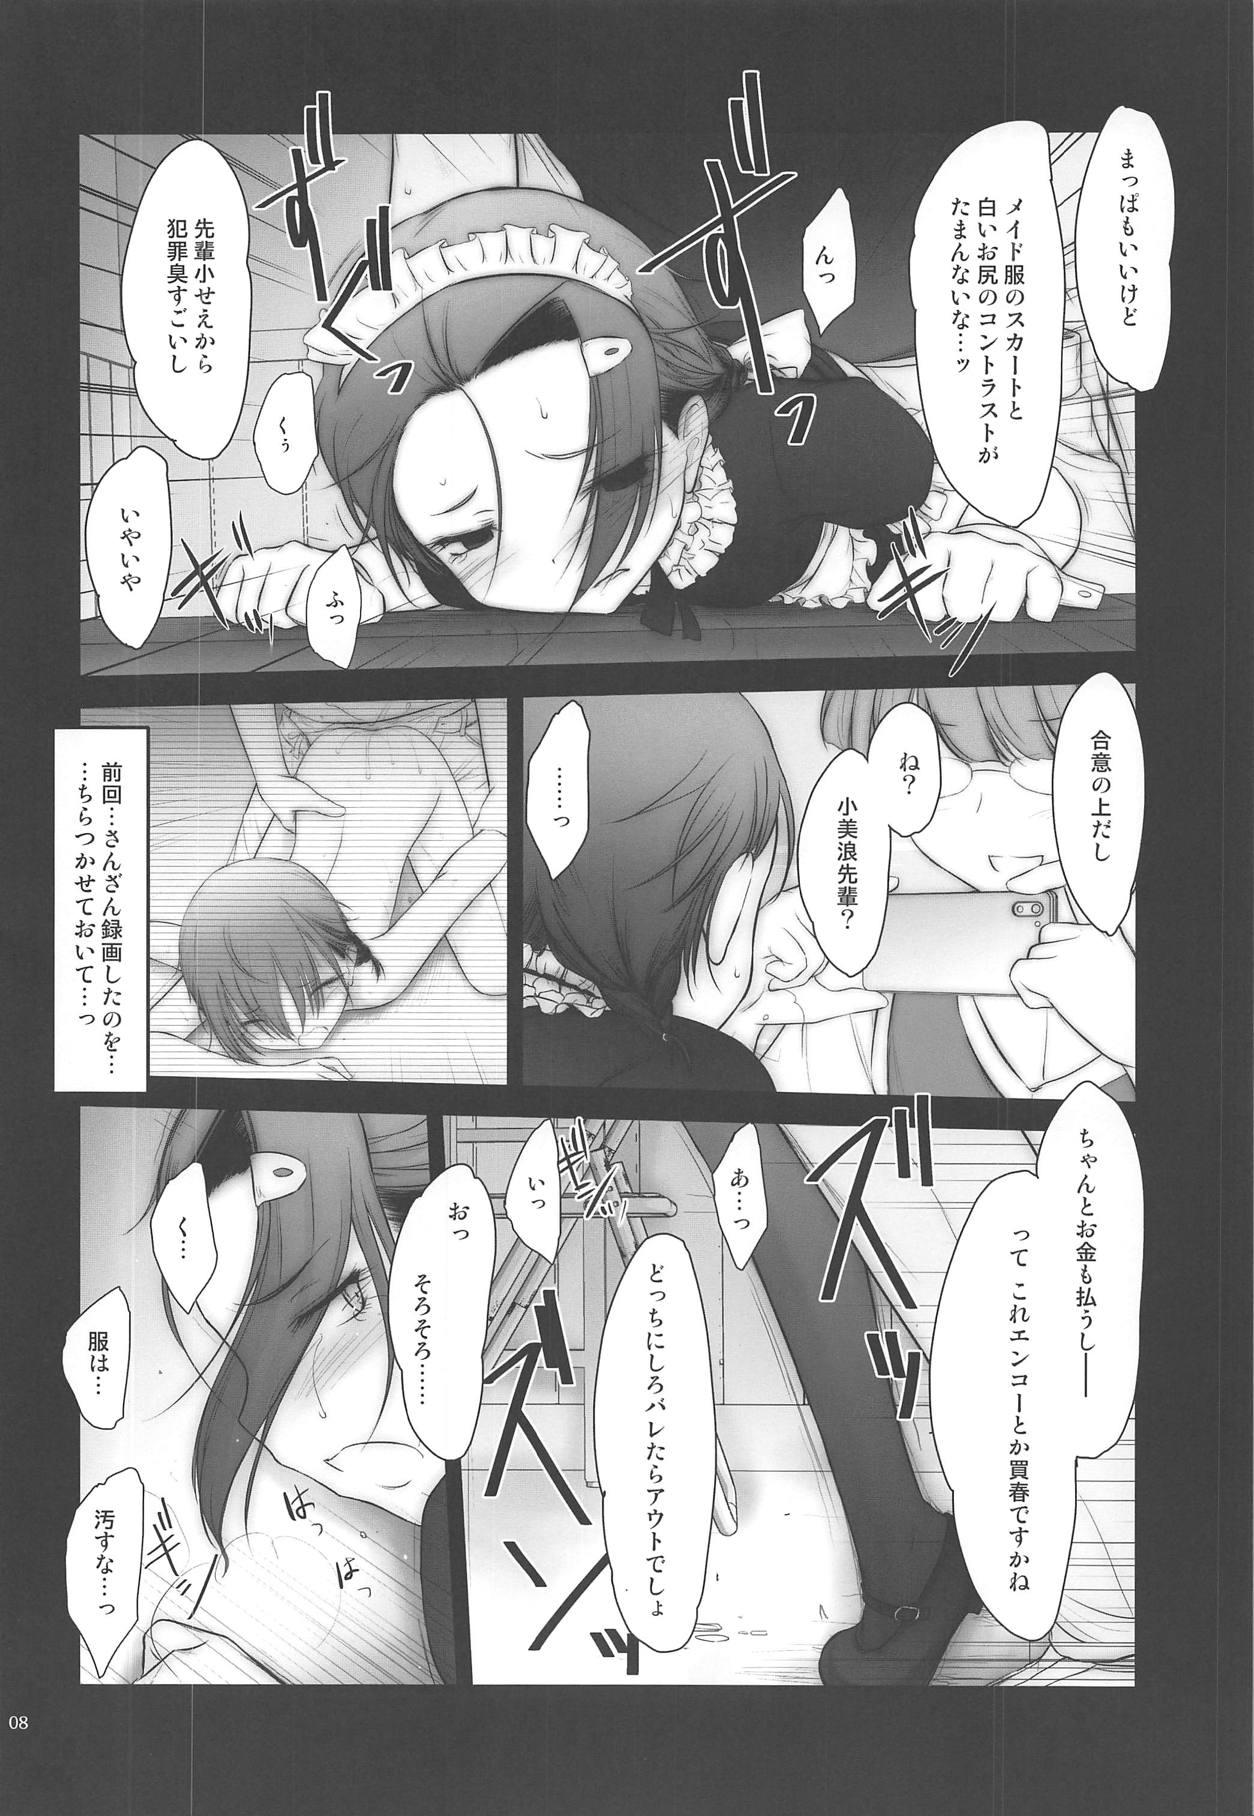 Scandal Petite Soeur 17 - Bokutachi wa benkyou ga dekinai Hotwife - Page 7